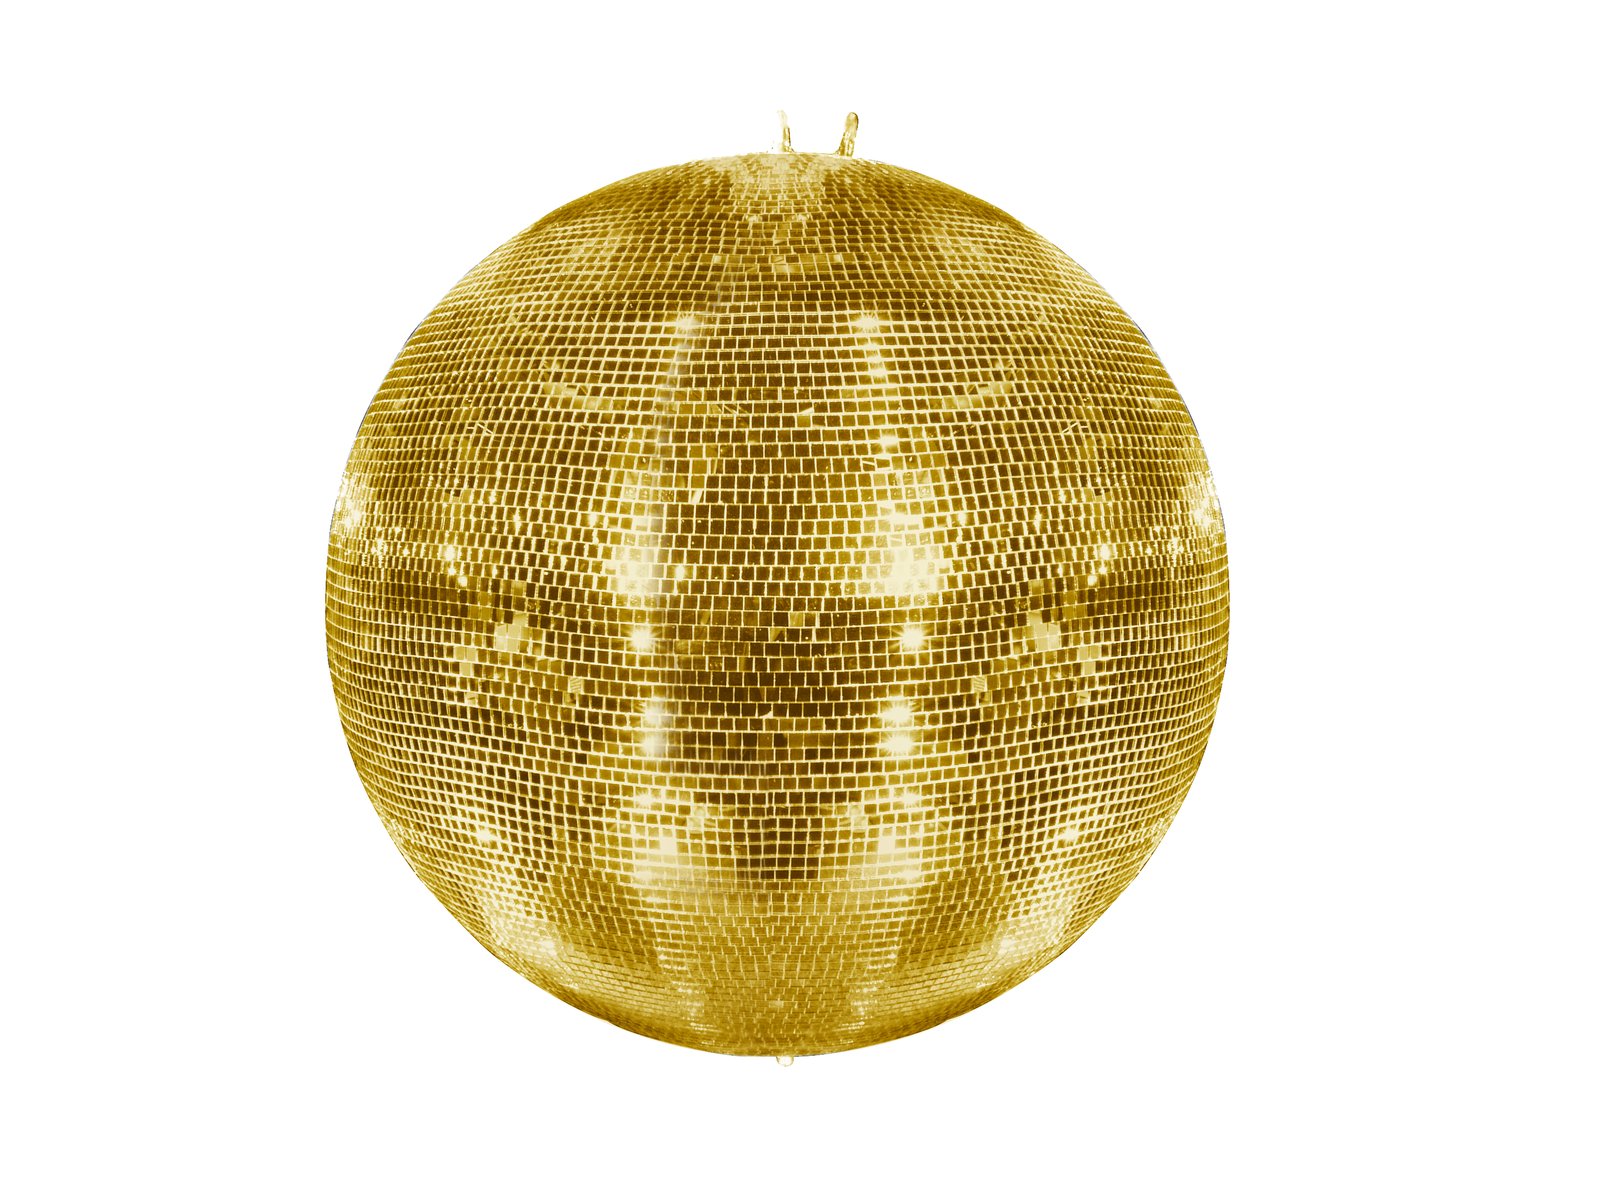 große disco spiegel ball, spiegel aufblasbare kugel, hängende gold